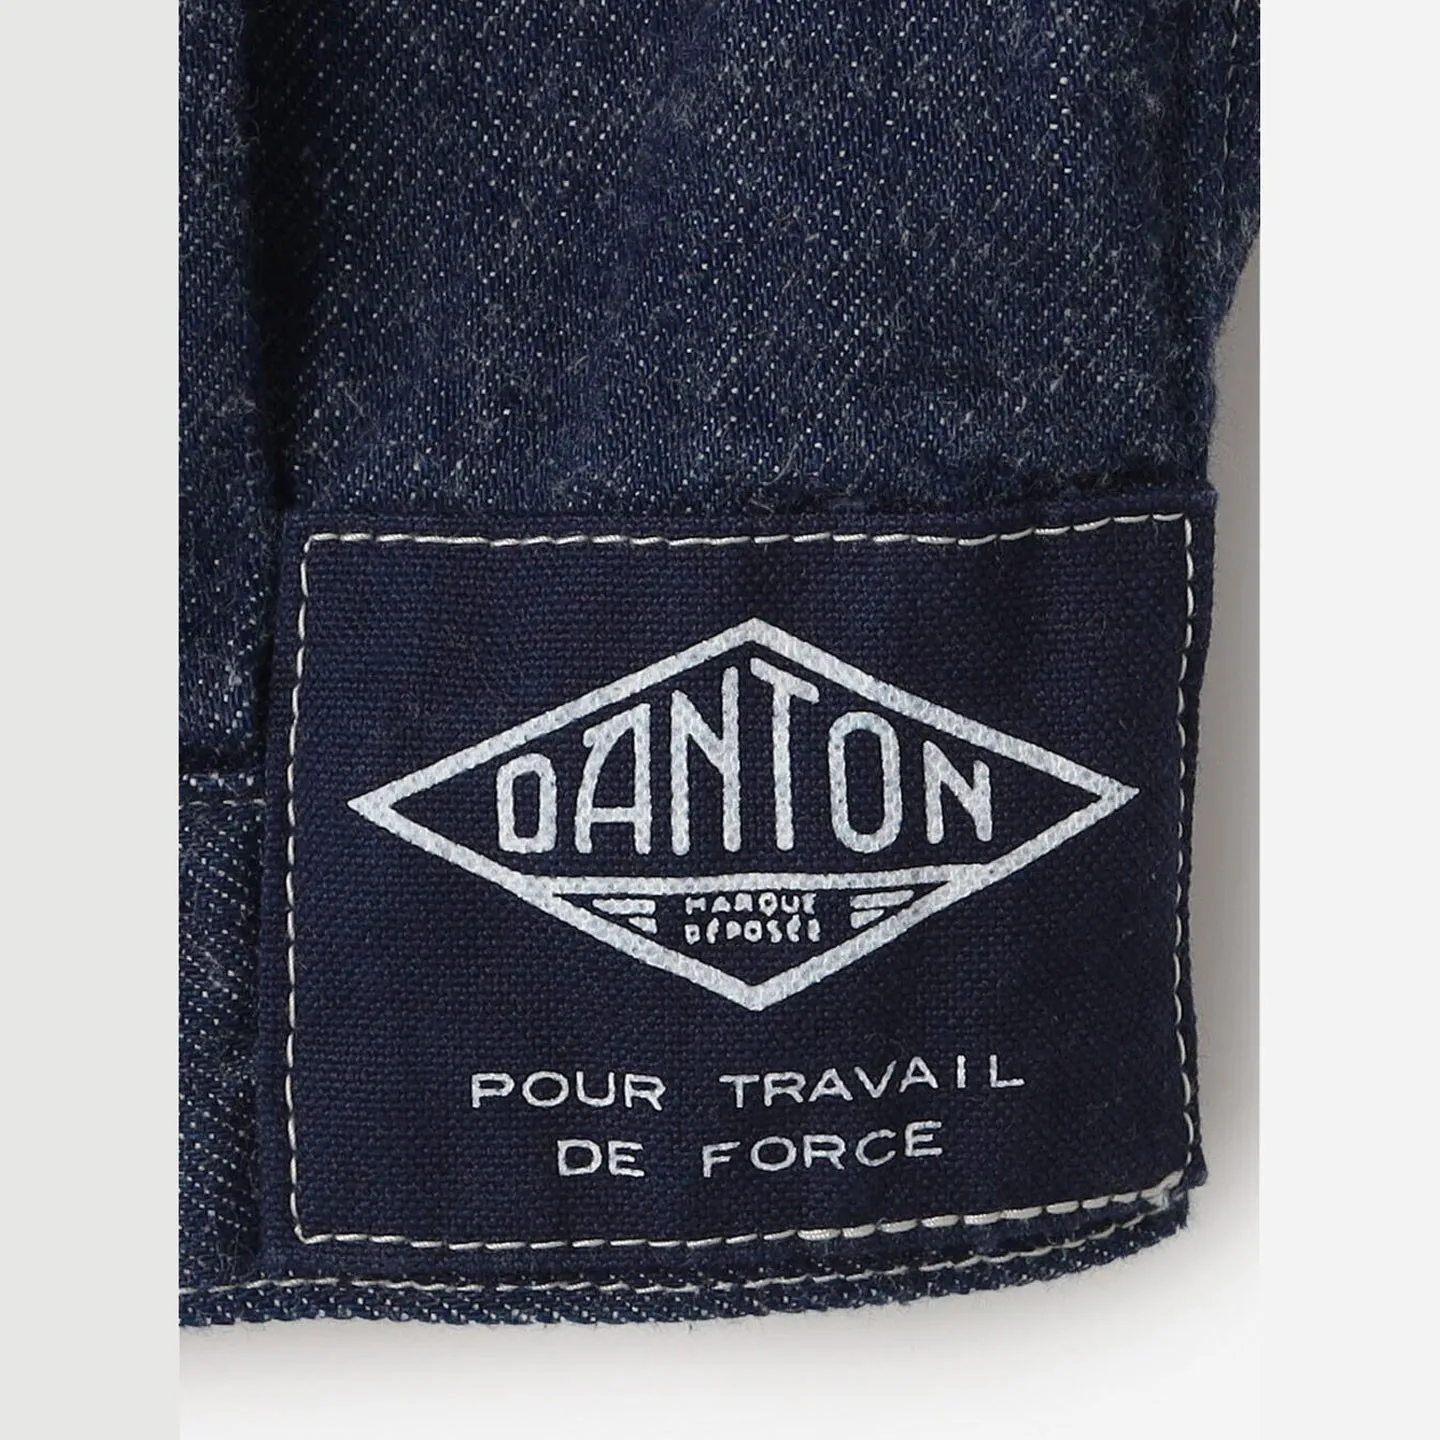 Blouson en Jeans 11oz sans col  #DT-A0121 KDM Danton